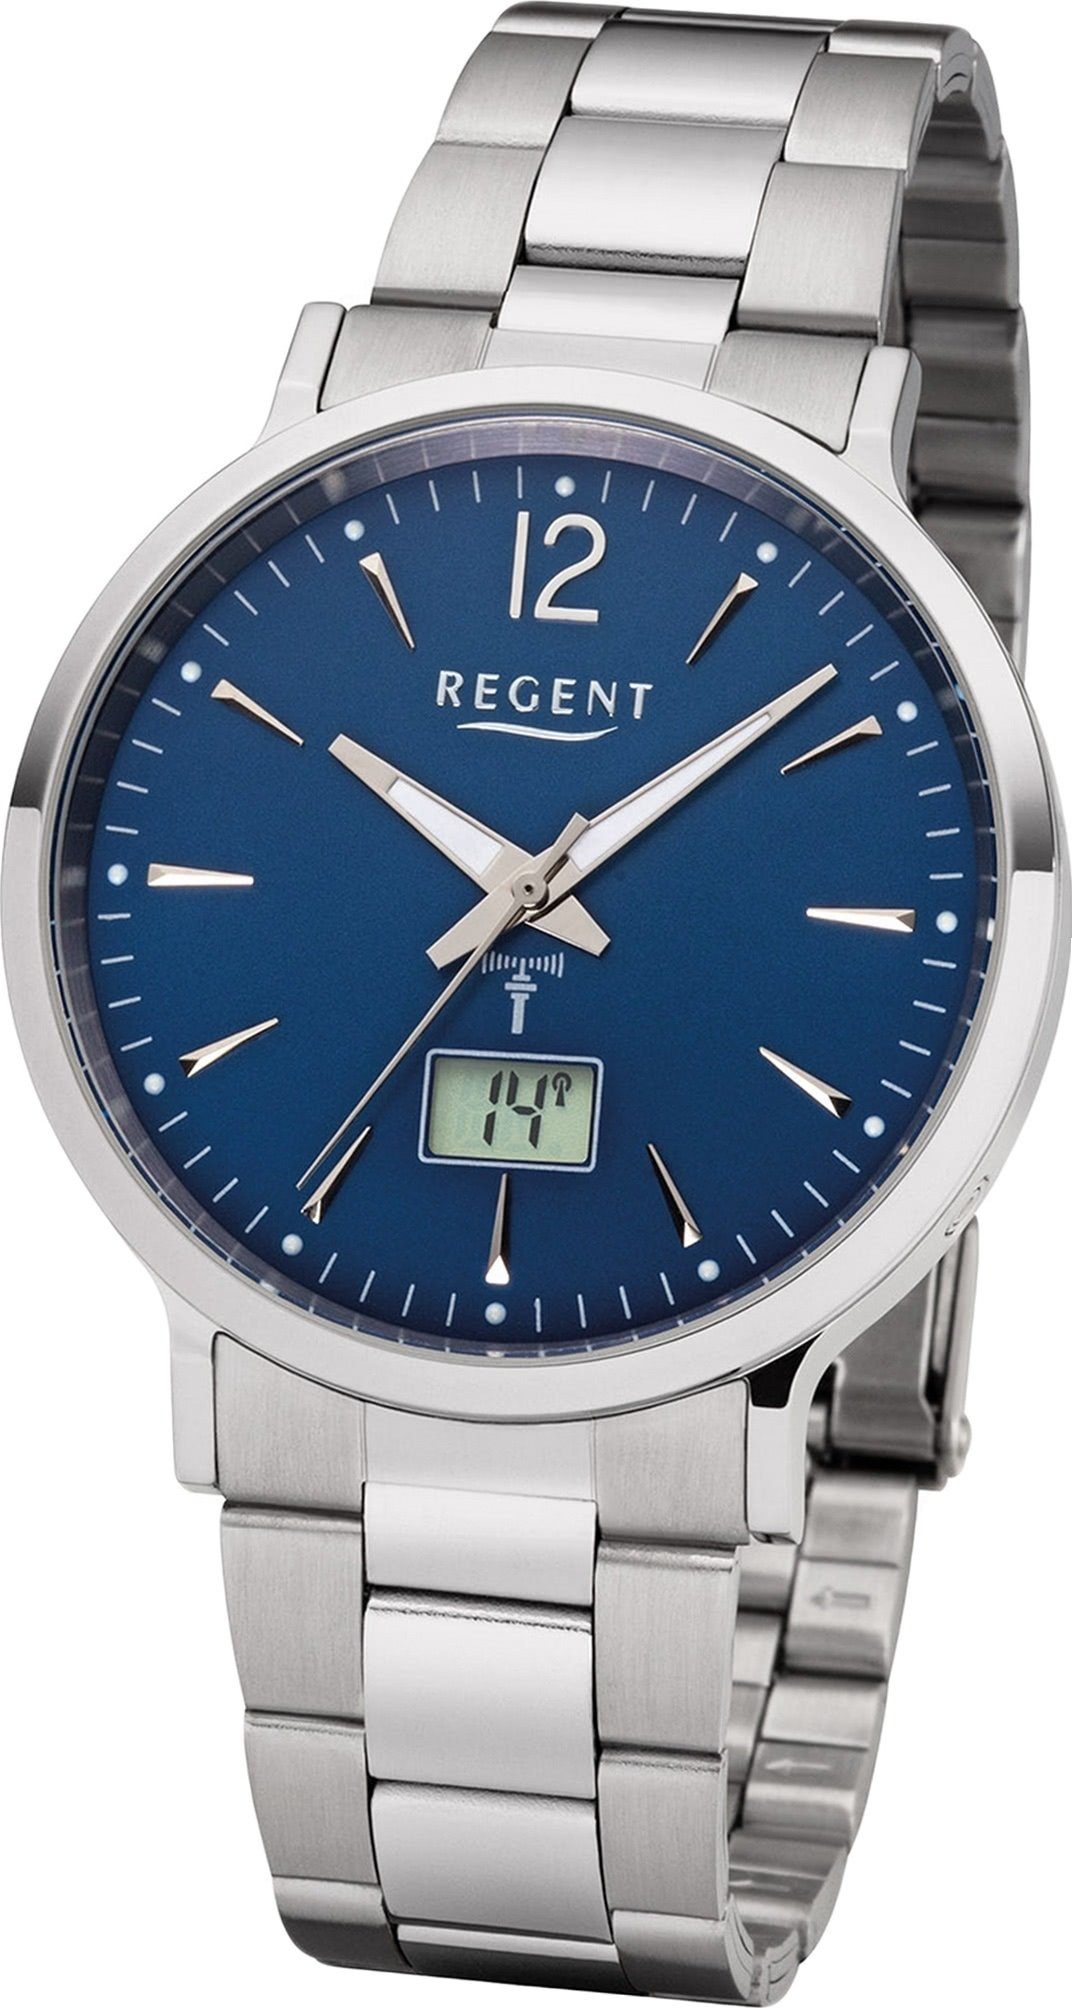 Regent Funkuhr mit rundes Metallarmband, Uhr Regent Gehäuse FR-247, 40mm), Herrenuhr (ca. Elegant-Style Metall Herren